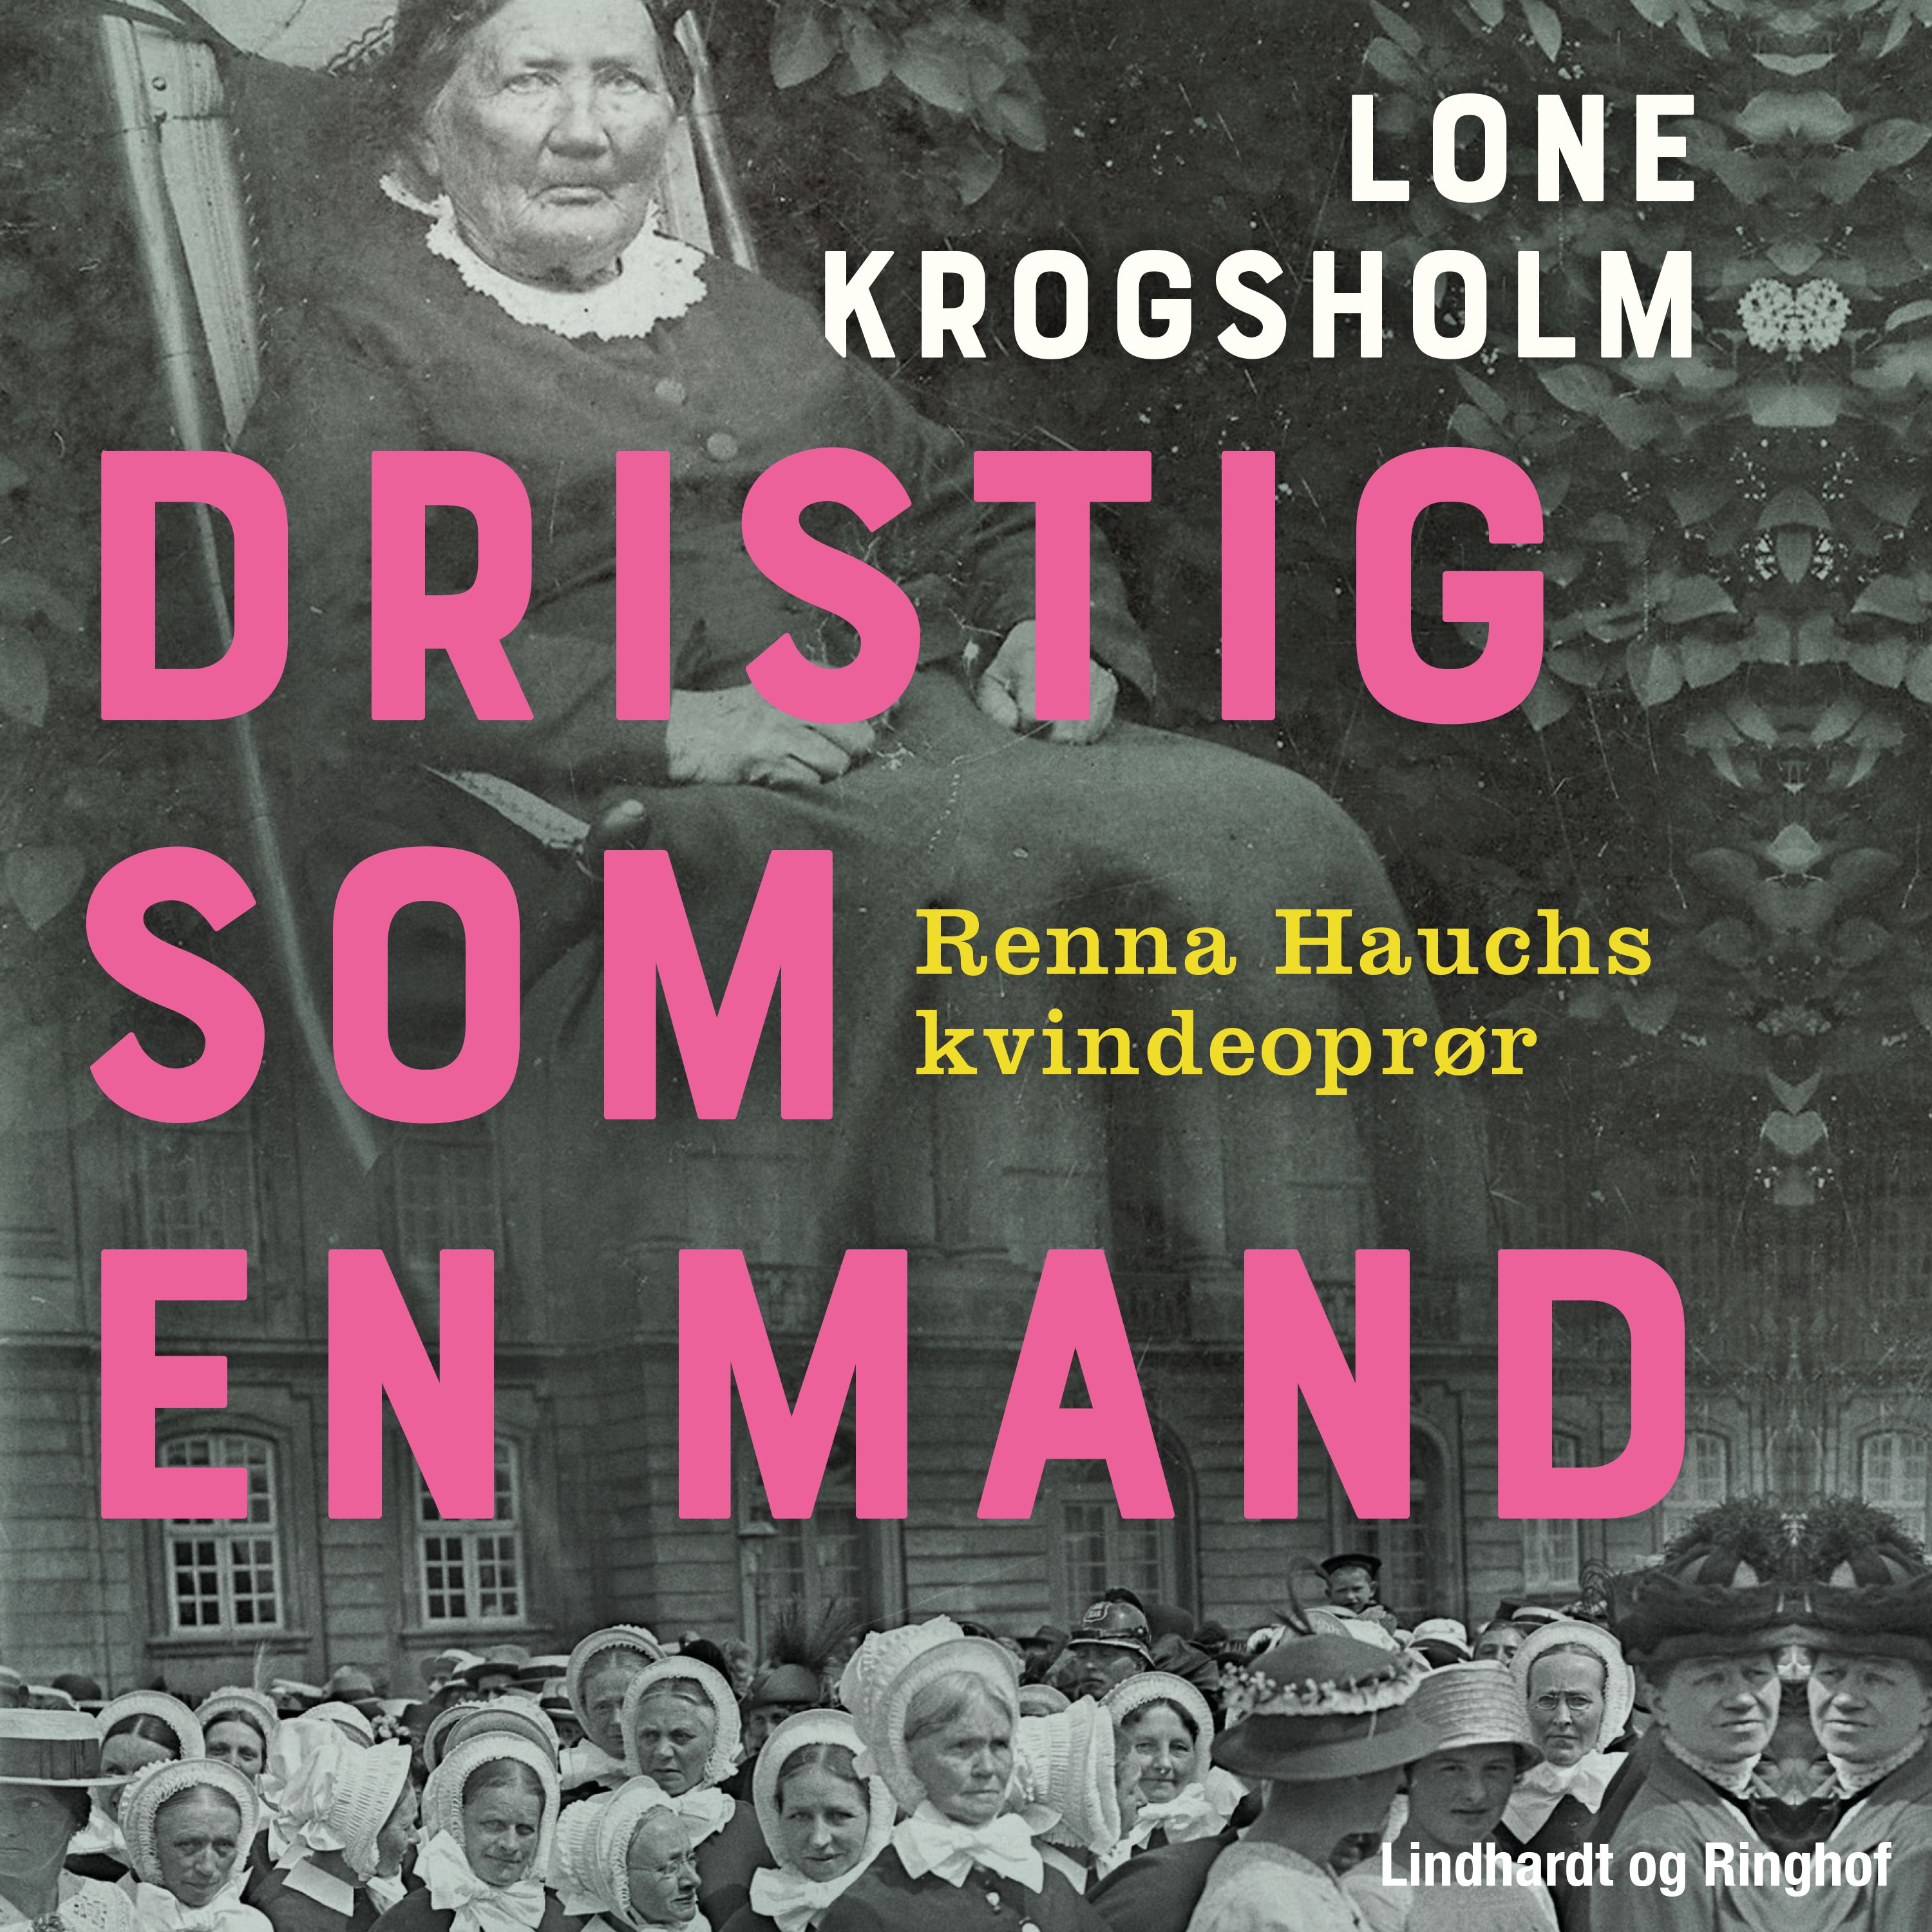 Dristig som en mand, audiobook by Lone Krogsholm